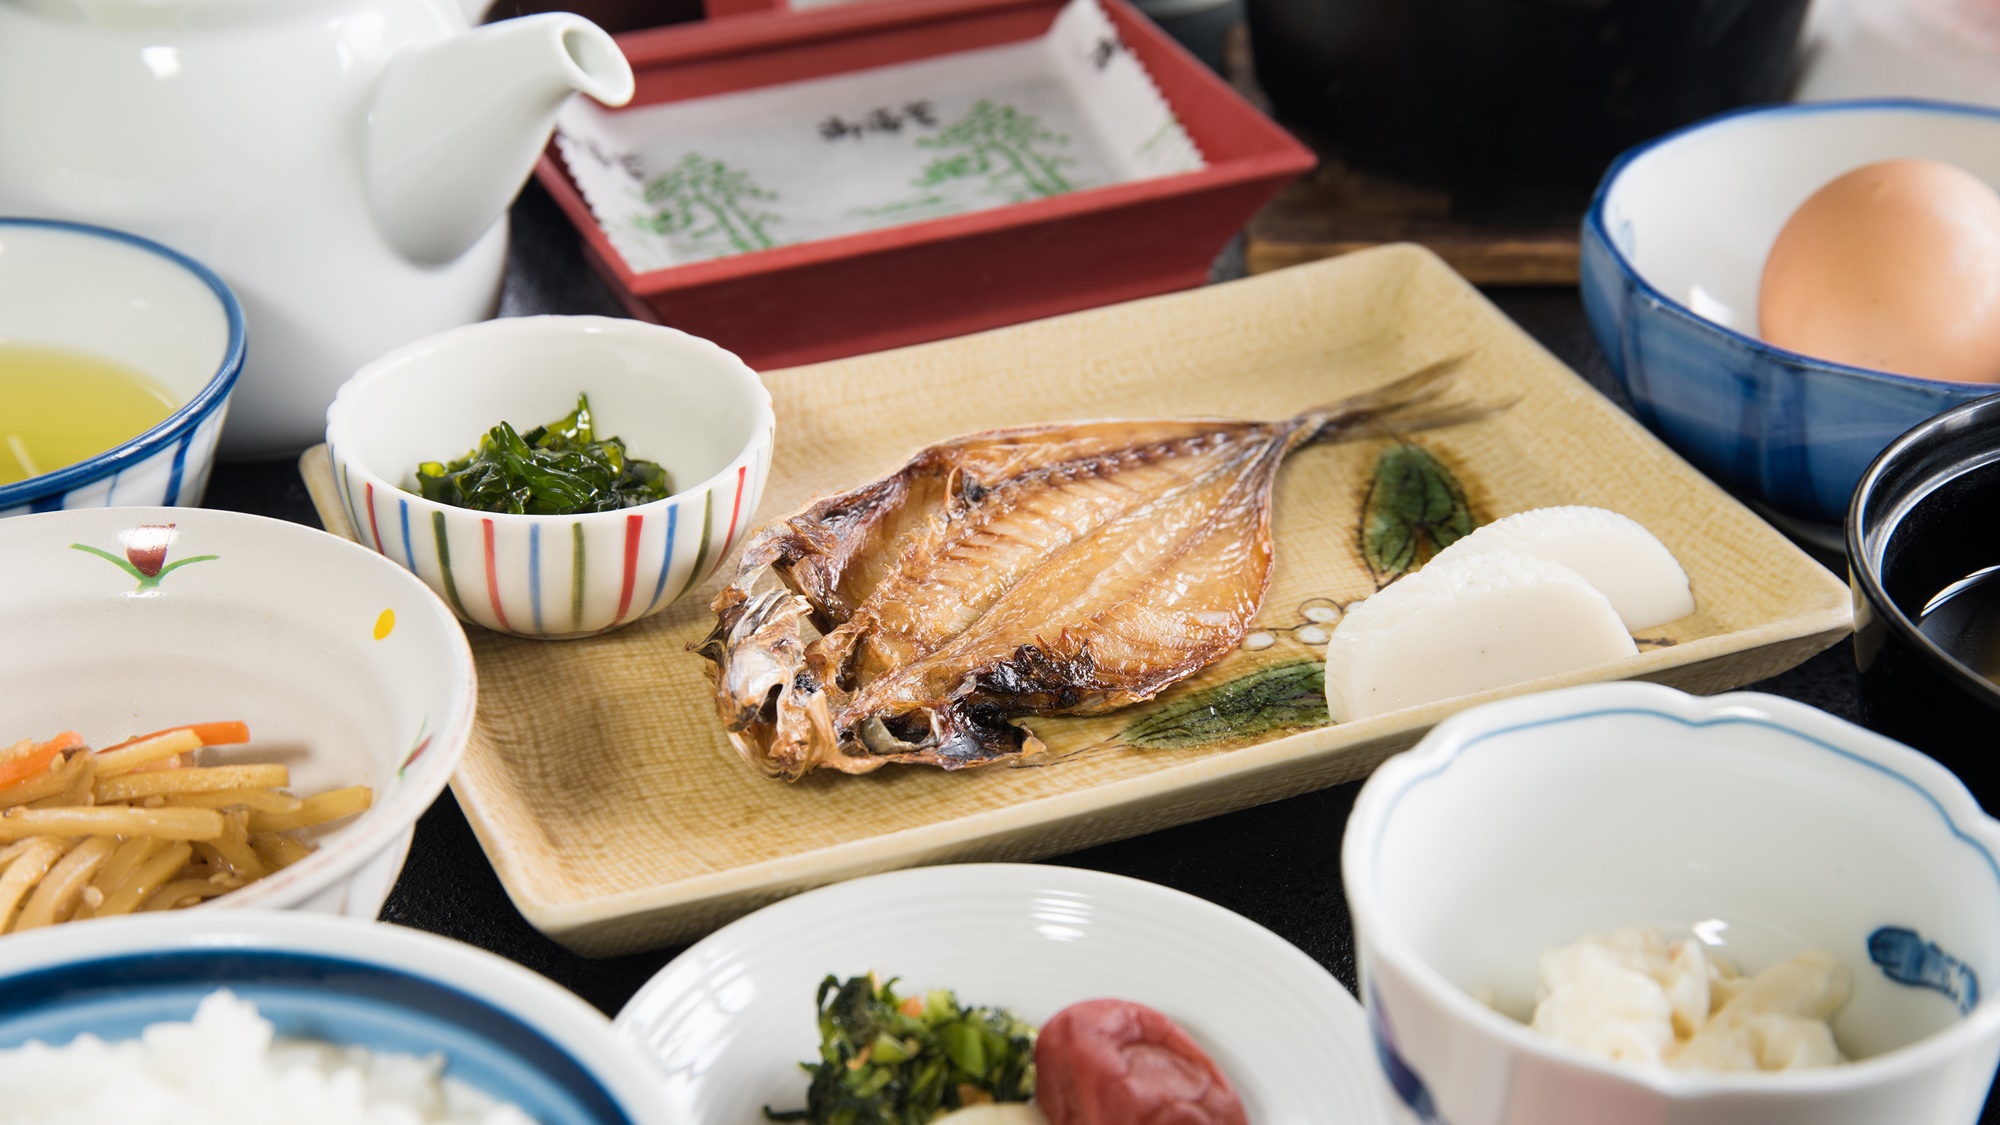 *【朝食-焼き魚-】下関ならではの、脂ののったお魚をお召し上がりください。